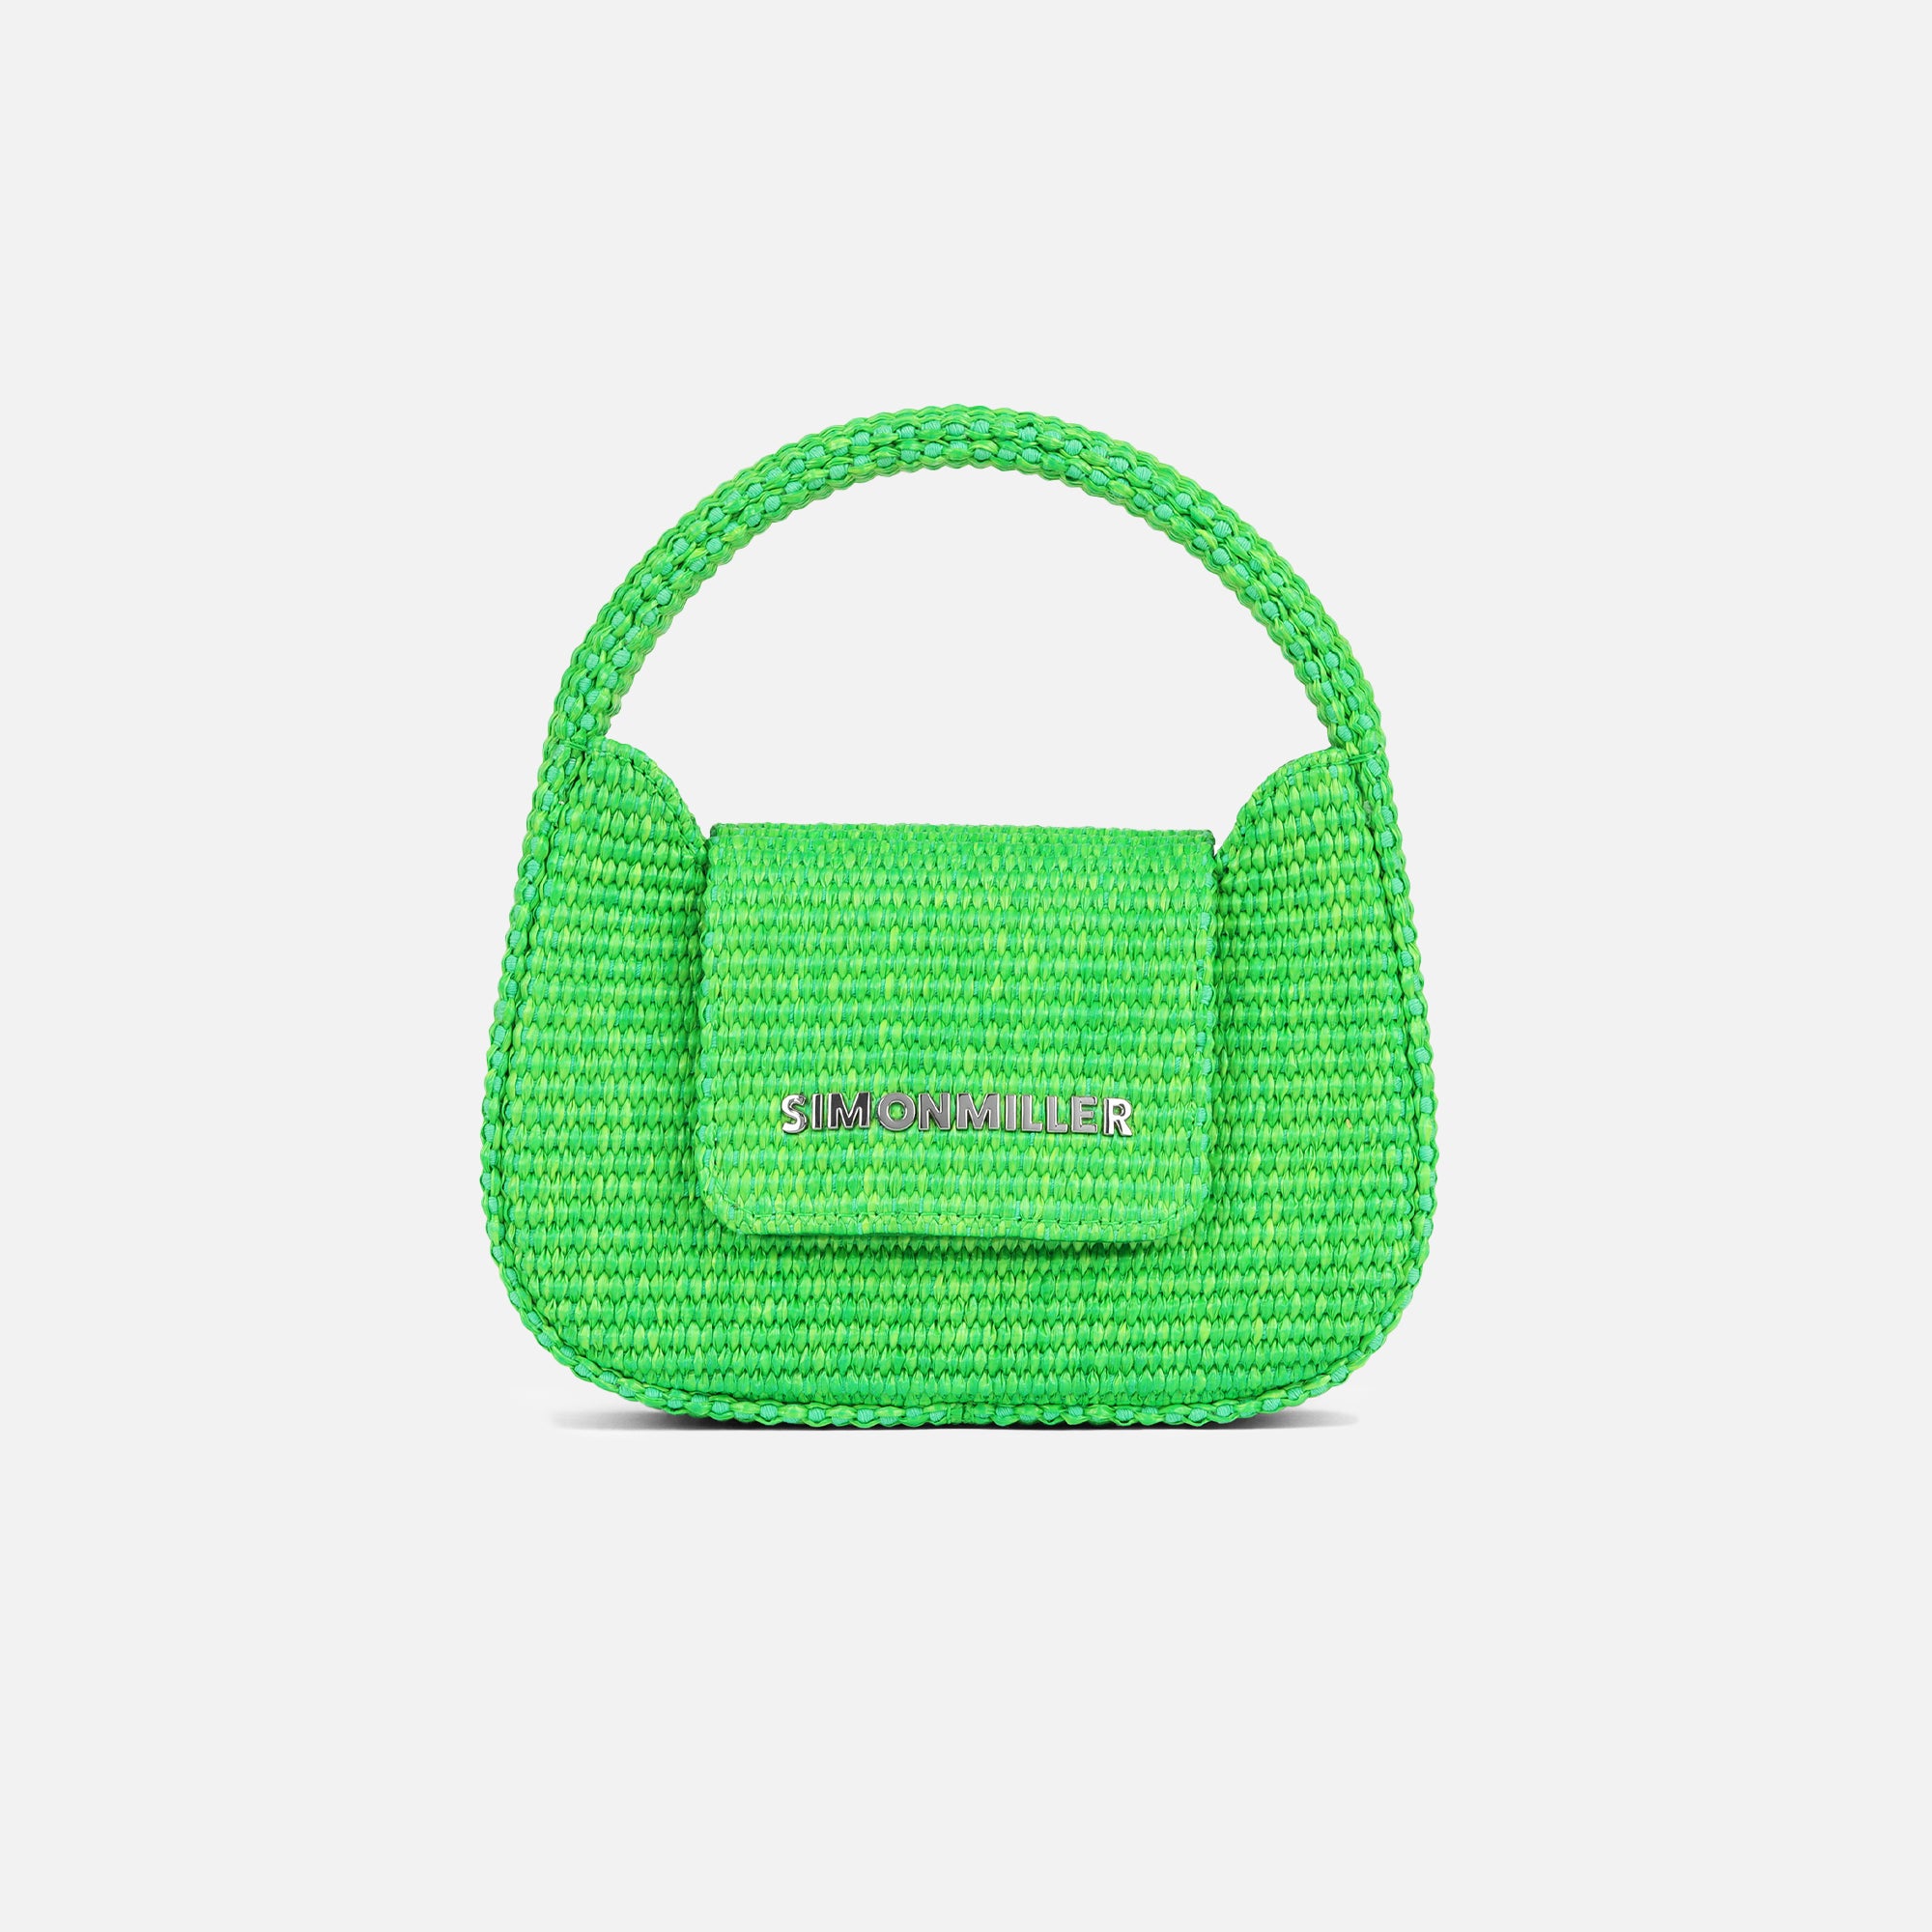 Simon Miller Mini Retro Bag - Happy Green Raffia – Kith